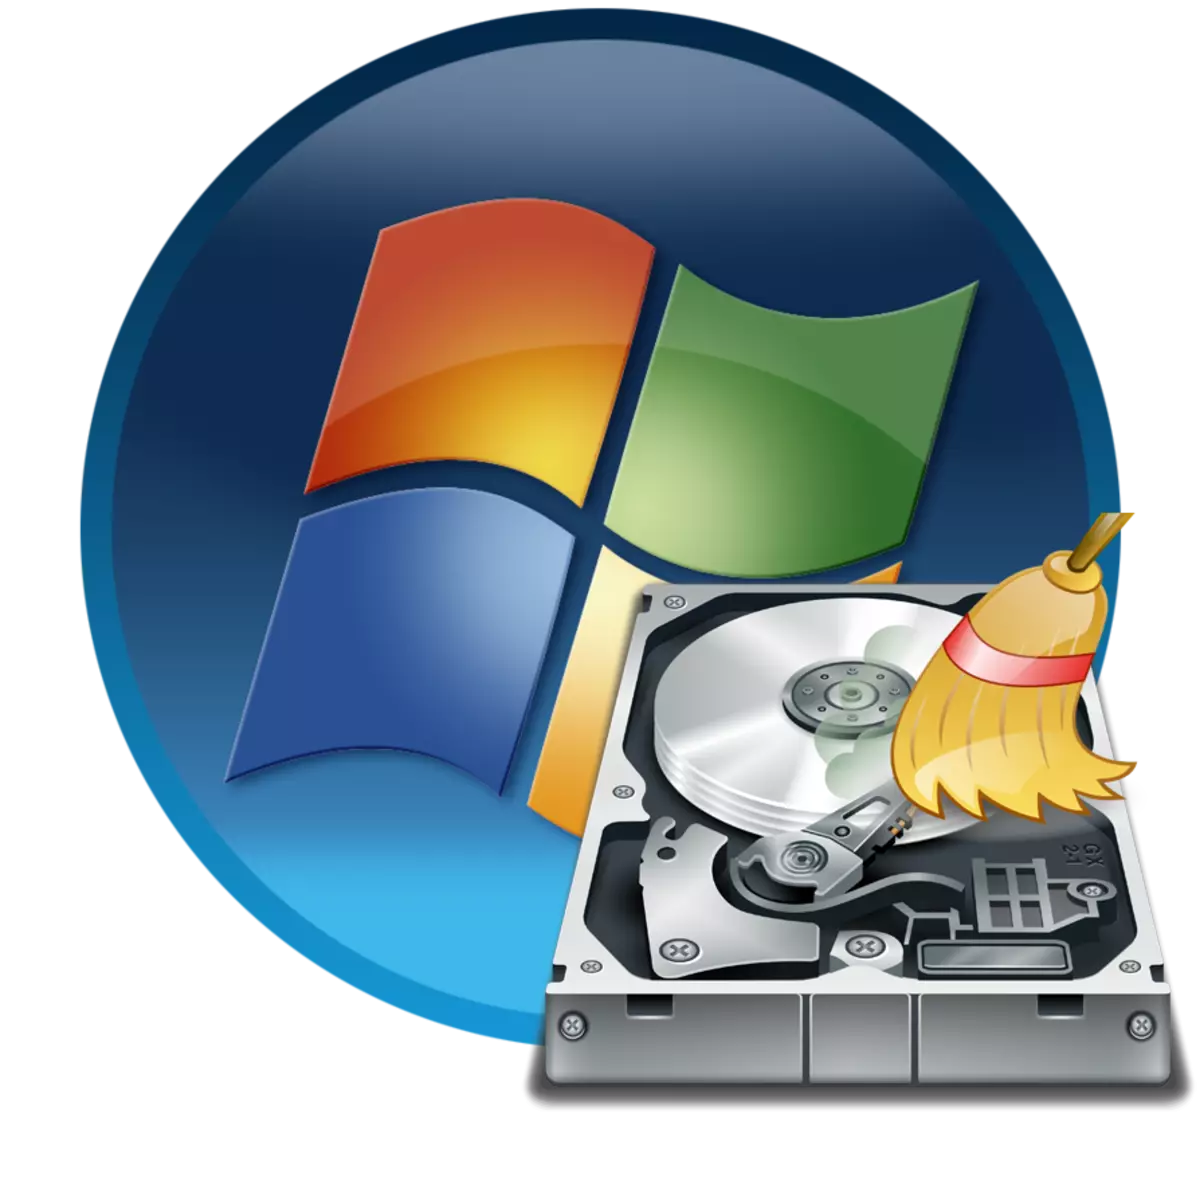 Skyf formatteer in Windows 7